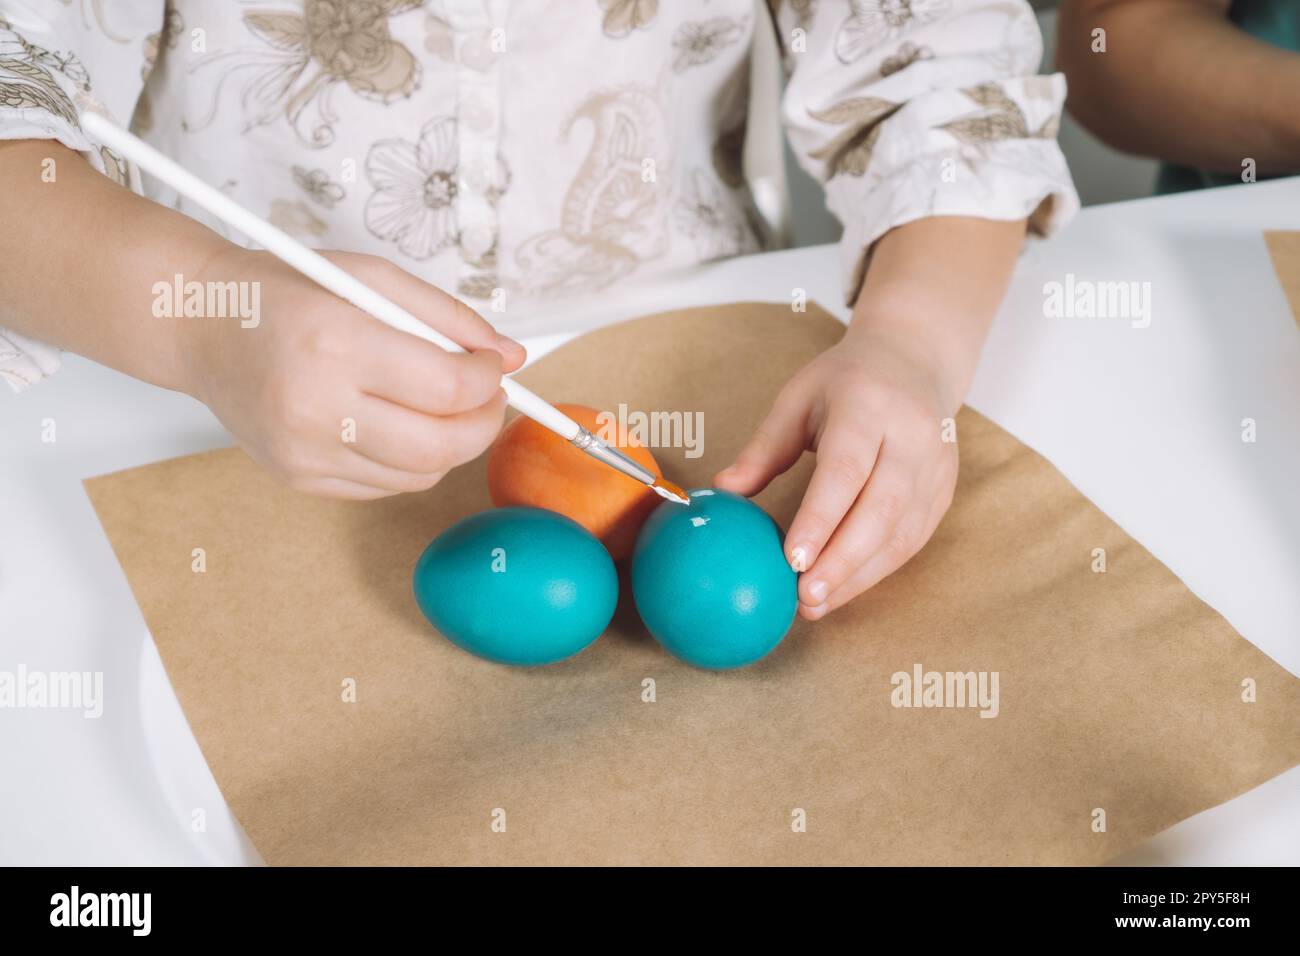 Ritratto ritagliato della mano di una bambina, che dipinge uova di galline pasquali multicolore, tavolo con lastre di carta marrone, pennello Foto Stock